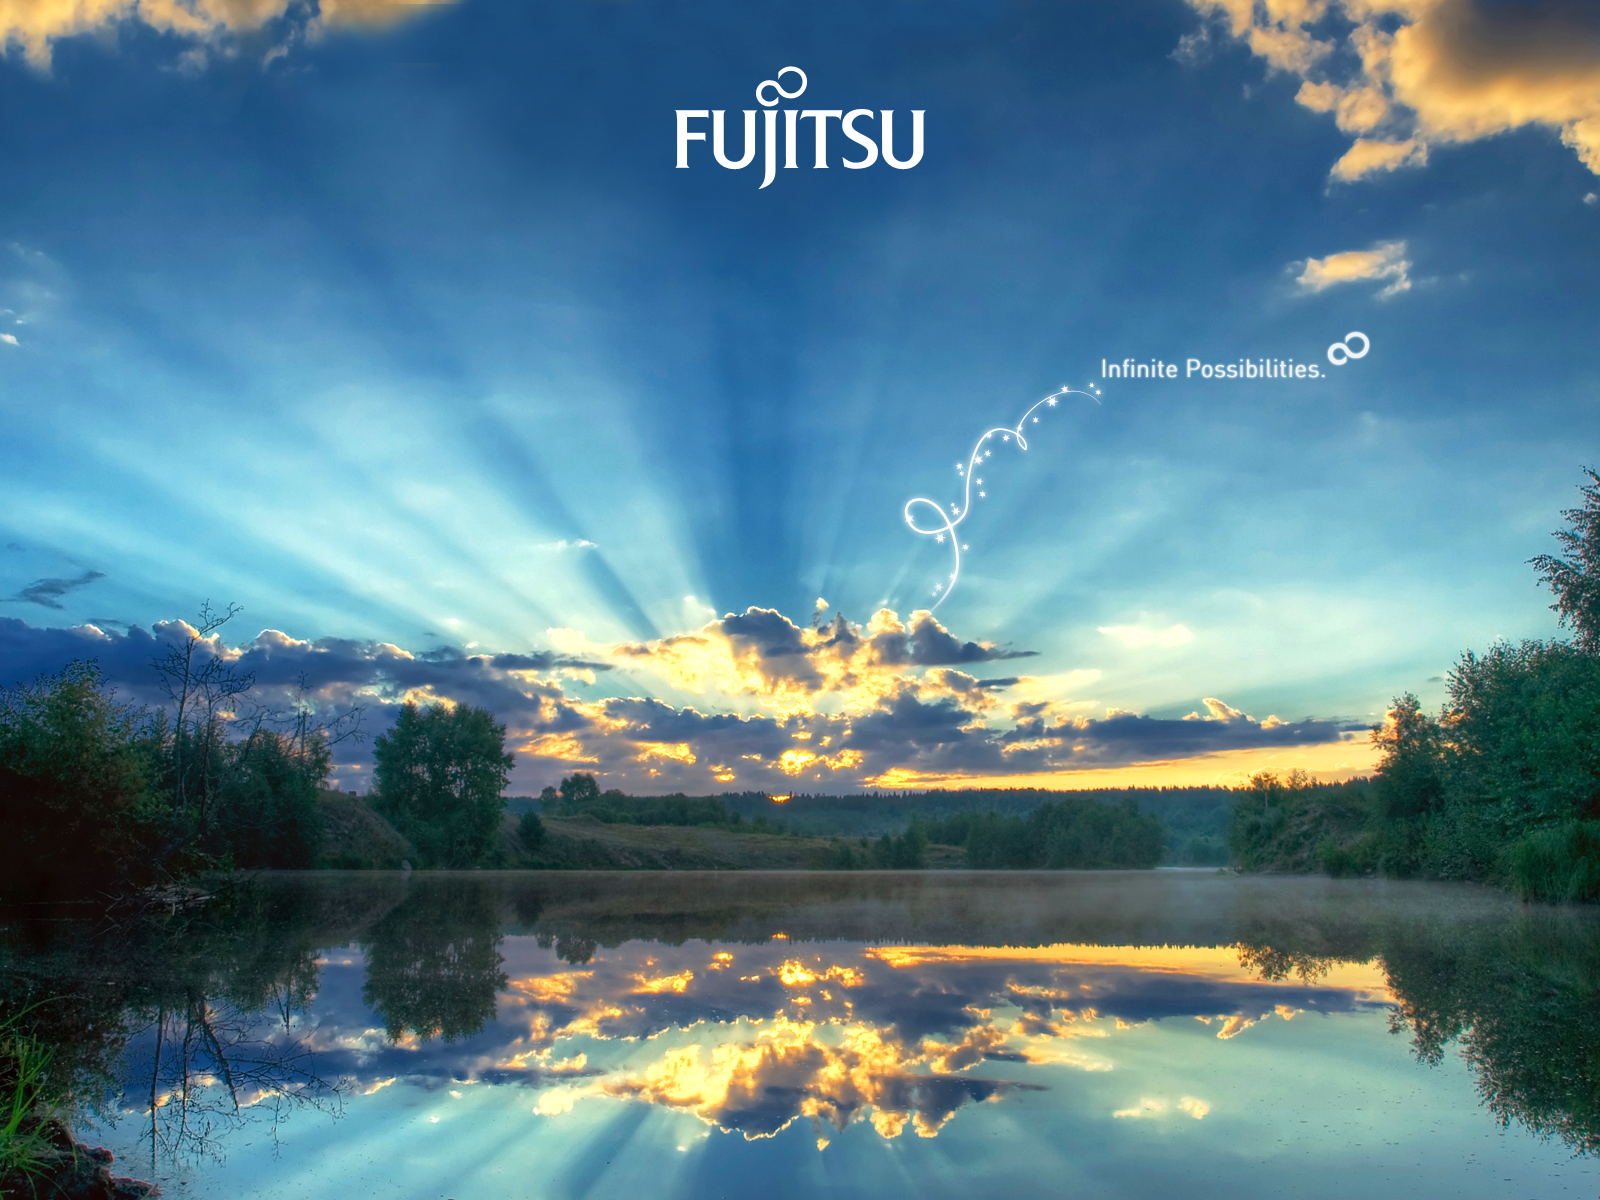 Descargar fondos de escritorio de Fujitsu HD